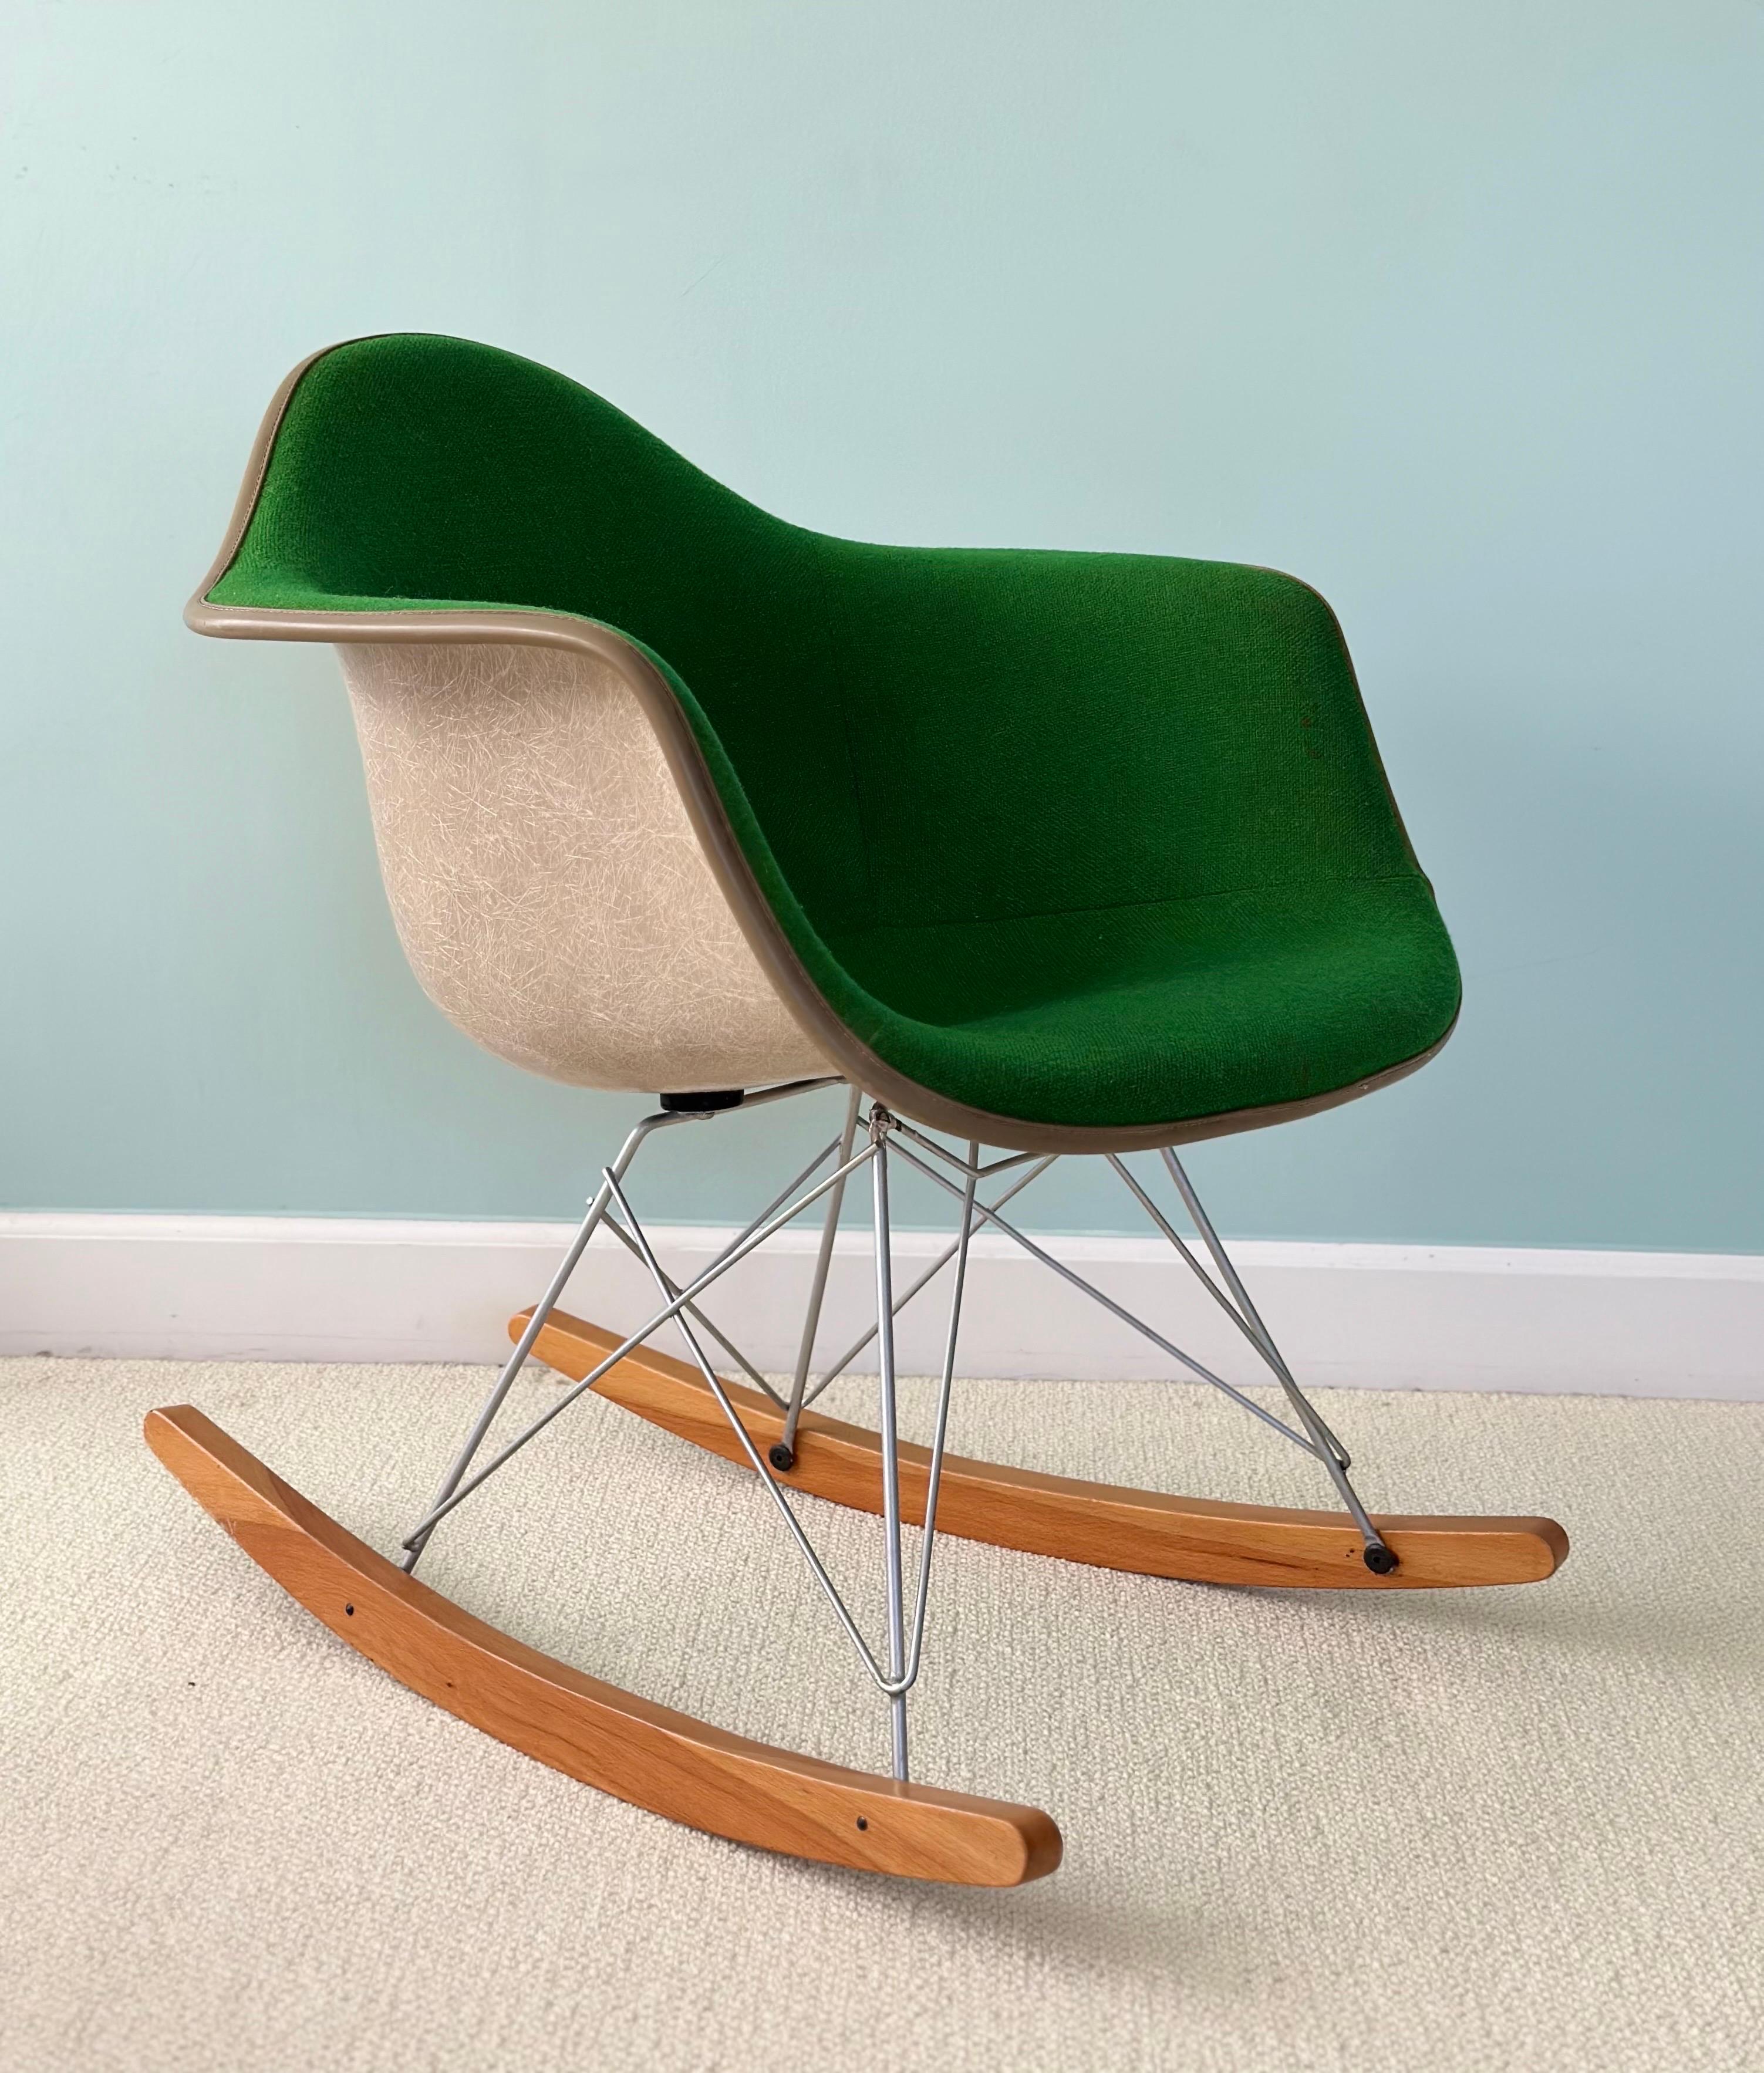 Wir freuen uns sehr, einen Vintage-Schaukelstuhl von Herman Miller aus den 1970er Jahren anbieten zu können.  Der RAR Rocking Chair, der von dem legendären Designerduo Charles und Ray Eames entworfen wurde, kam in den 1950er Jahren auf den Markt und